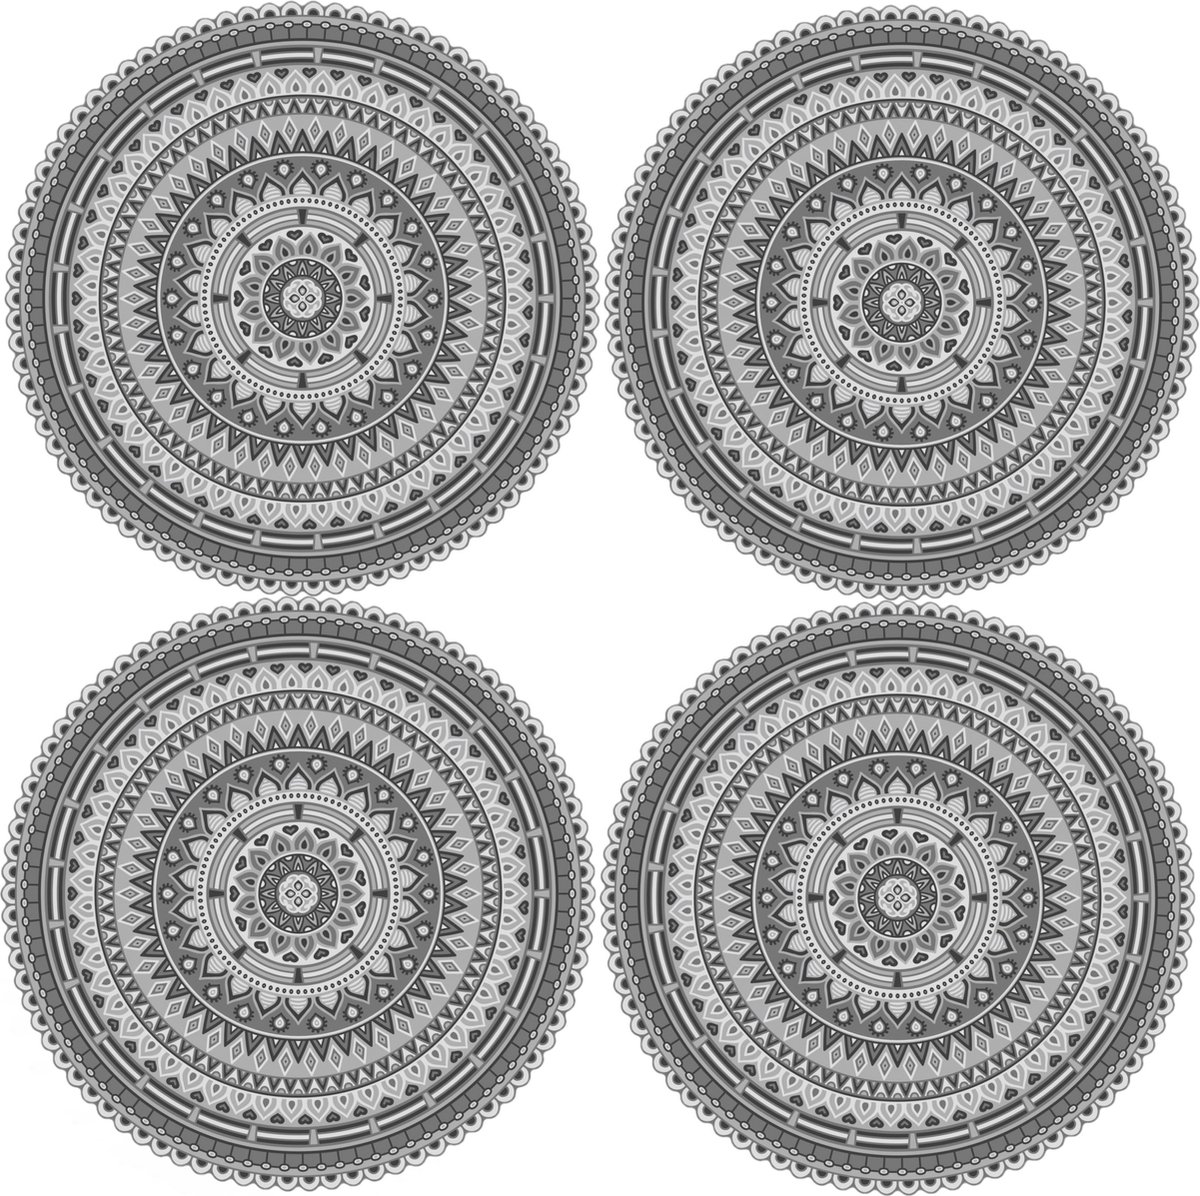 12x stuks Ibiza stijl ronde grijze placemats van vinyl D38 cm - Antislip/waterafstotend - Stevige top kwaliteit